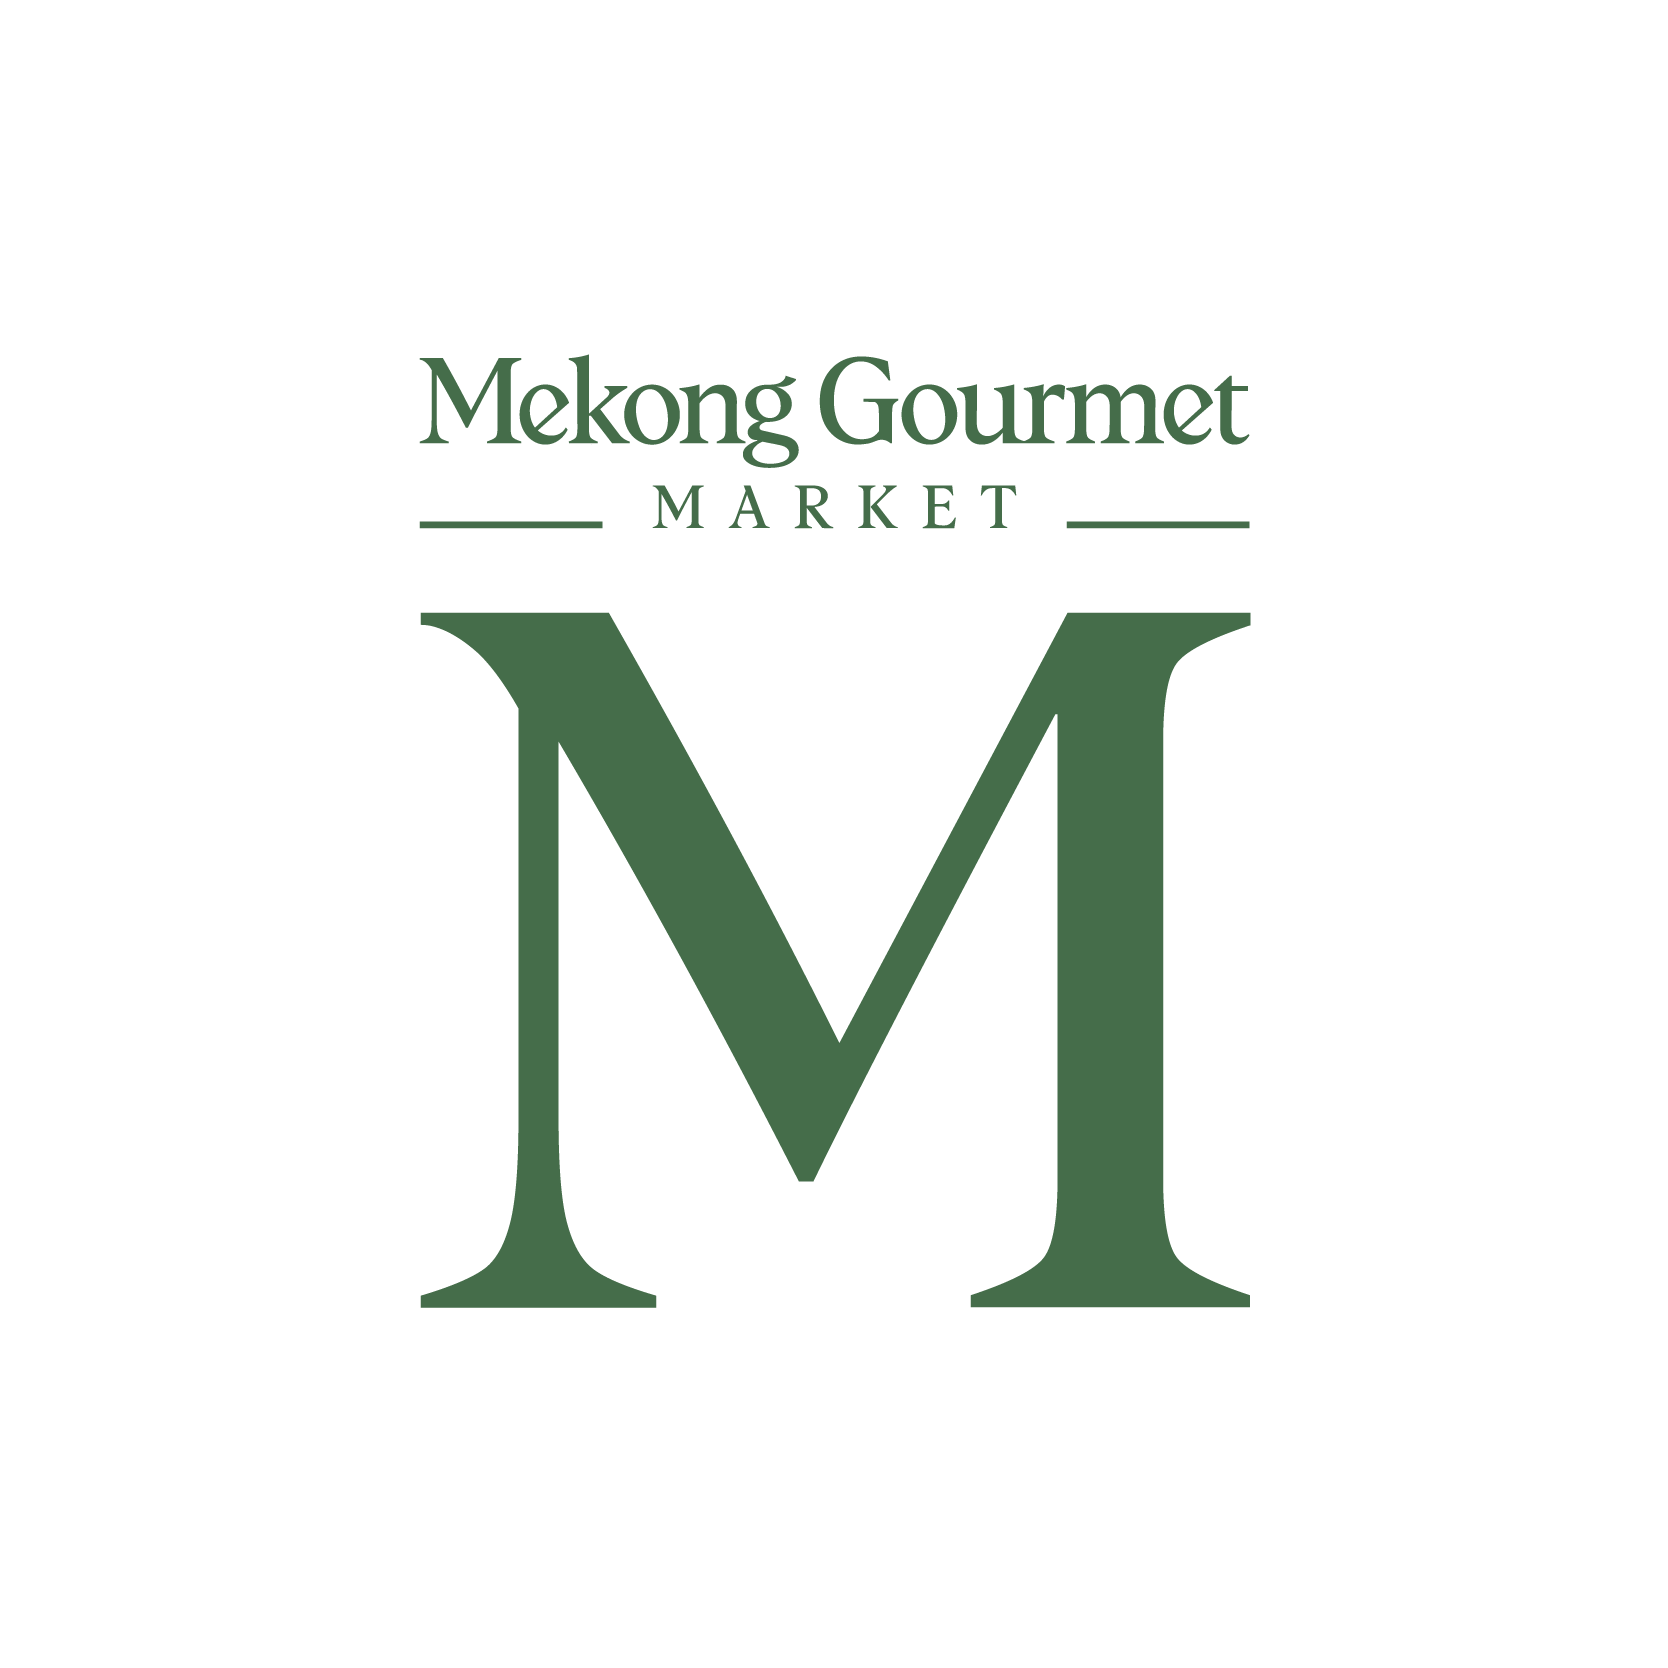 Logo Mekong Gourmet_M - Mekong Gourmet Market-15